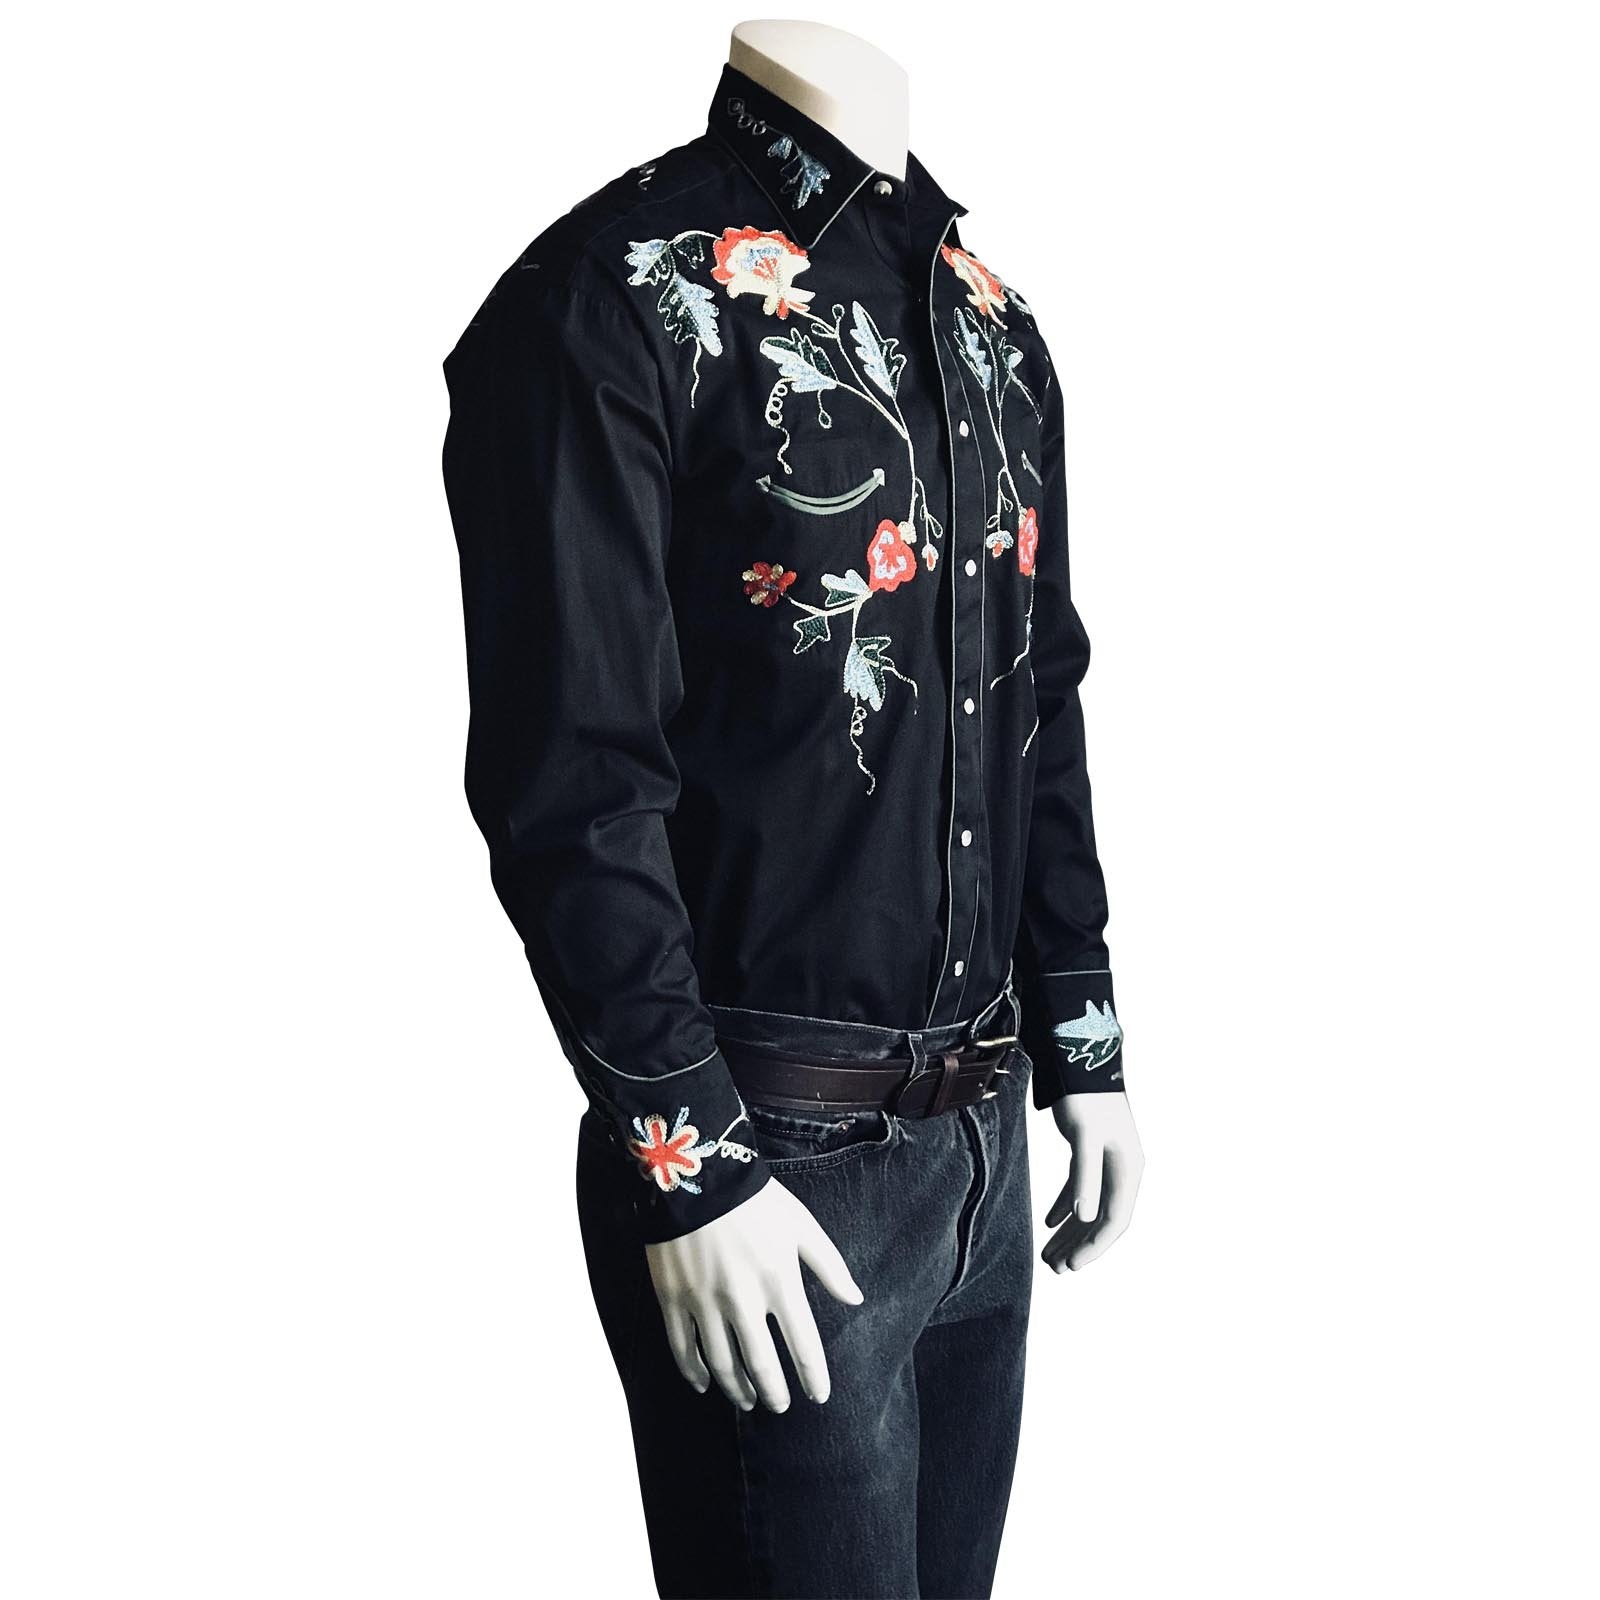 Rockmount Ranch Wear Men's Vintage Western Shirt Floral on Black Side